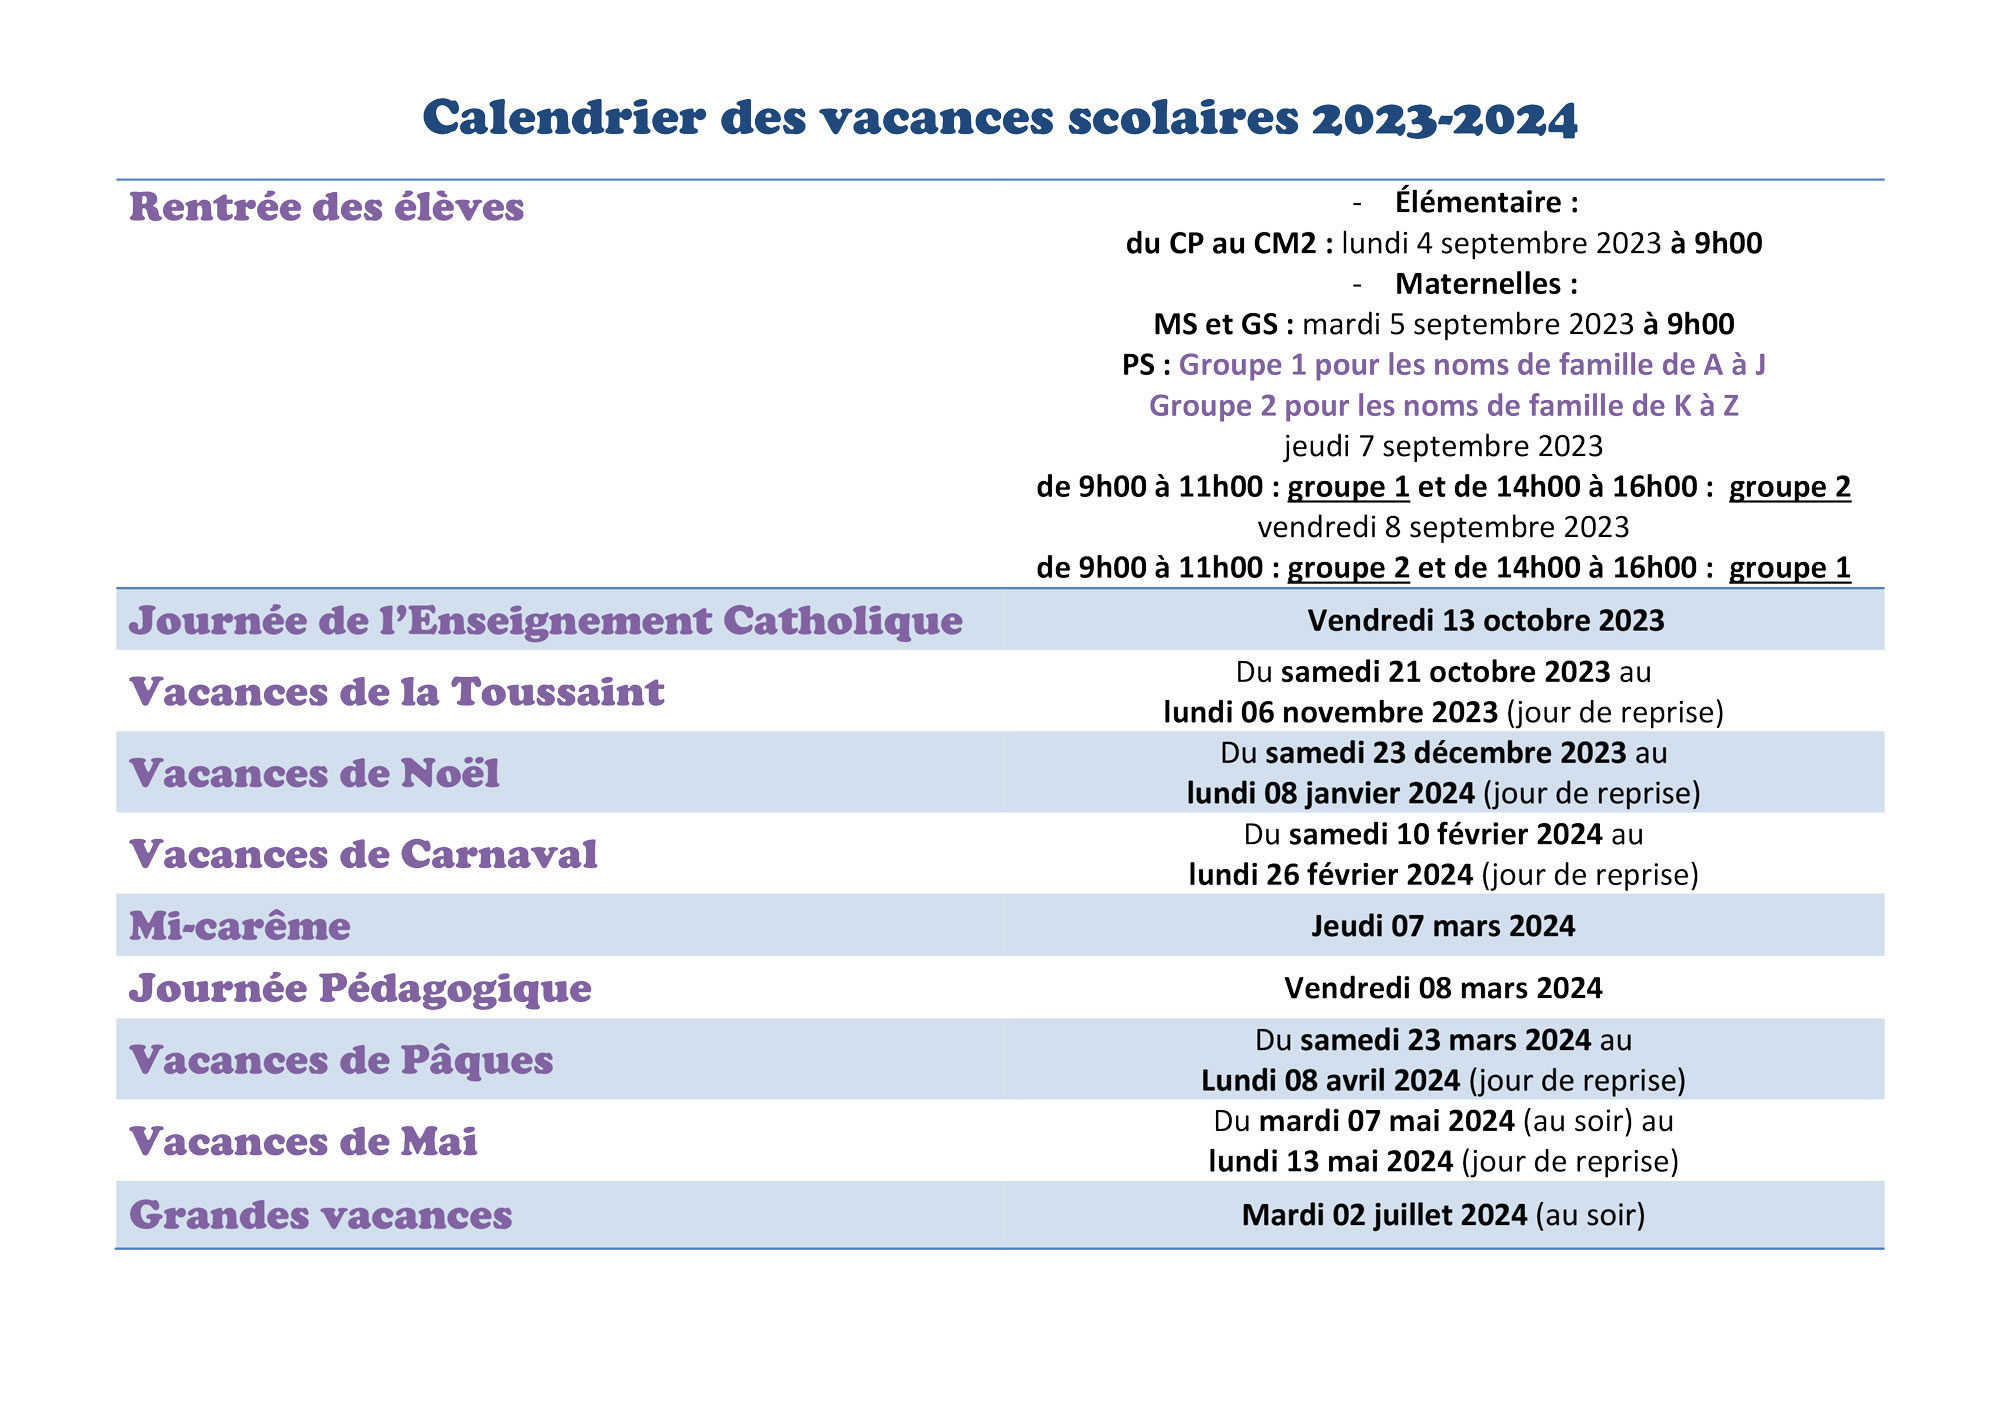 Calendrier des Vacances Scolaires 2023-2024